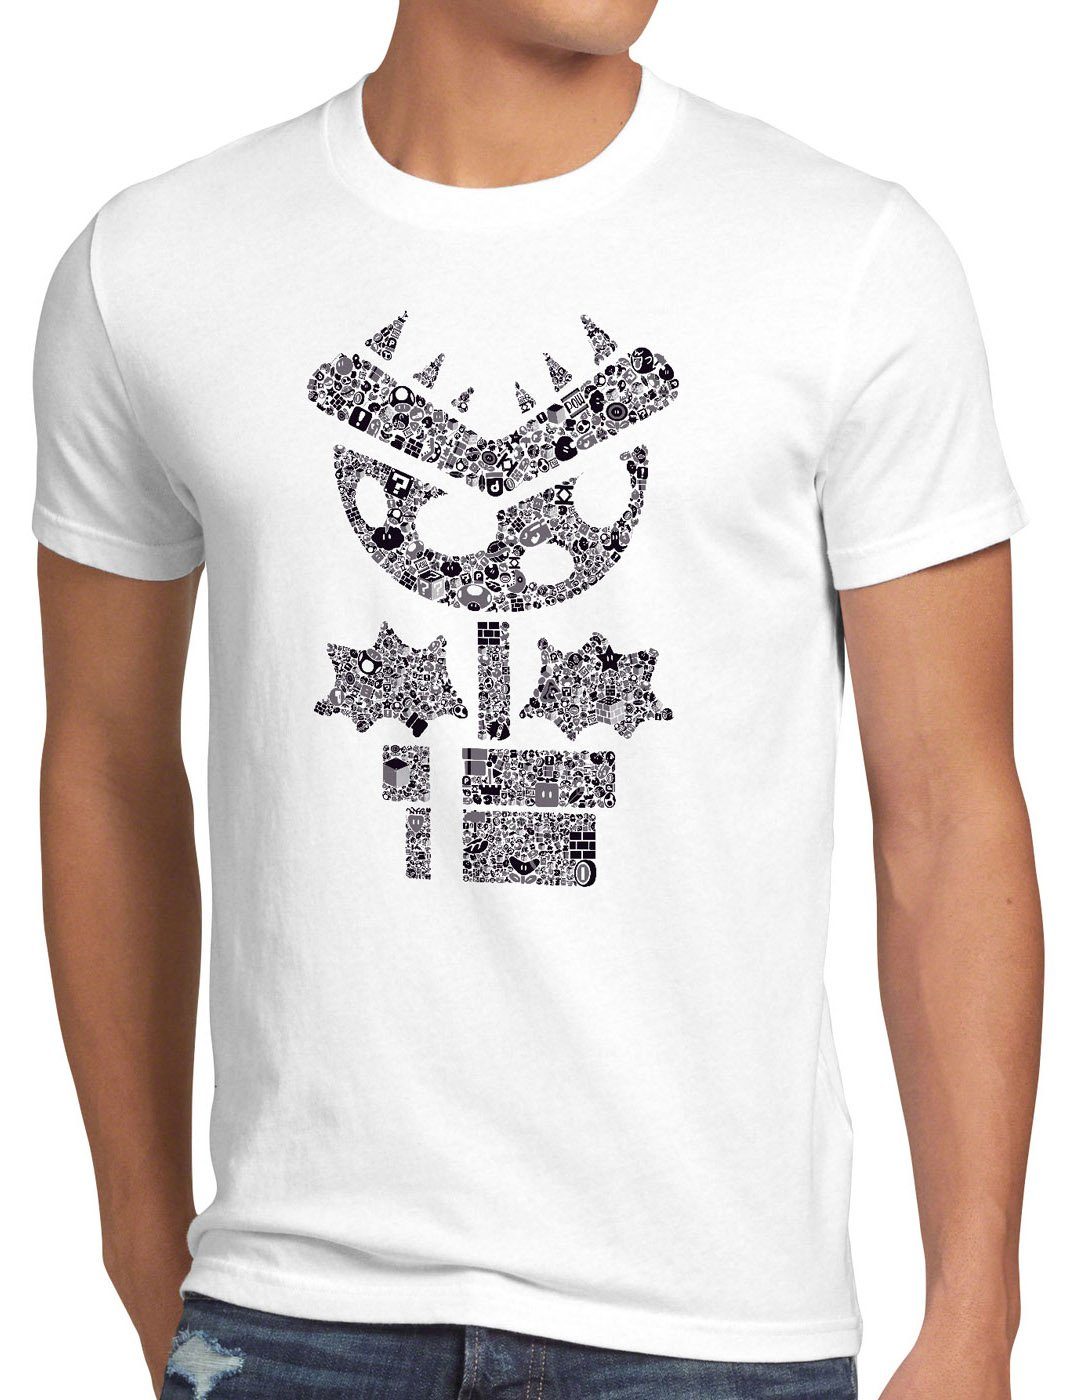 mario weiß game style3 videospiel Herren Super T-Shirt Print-Shirt gamer snes wii world nes Piranha boy